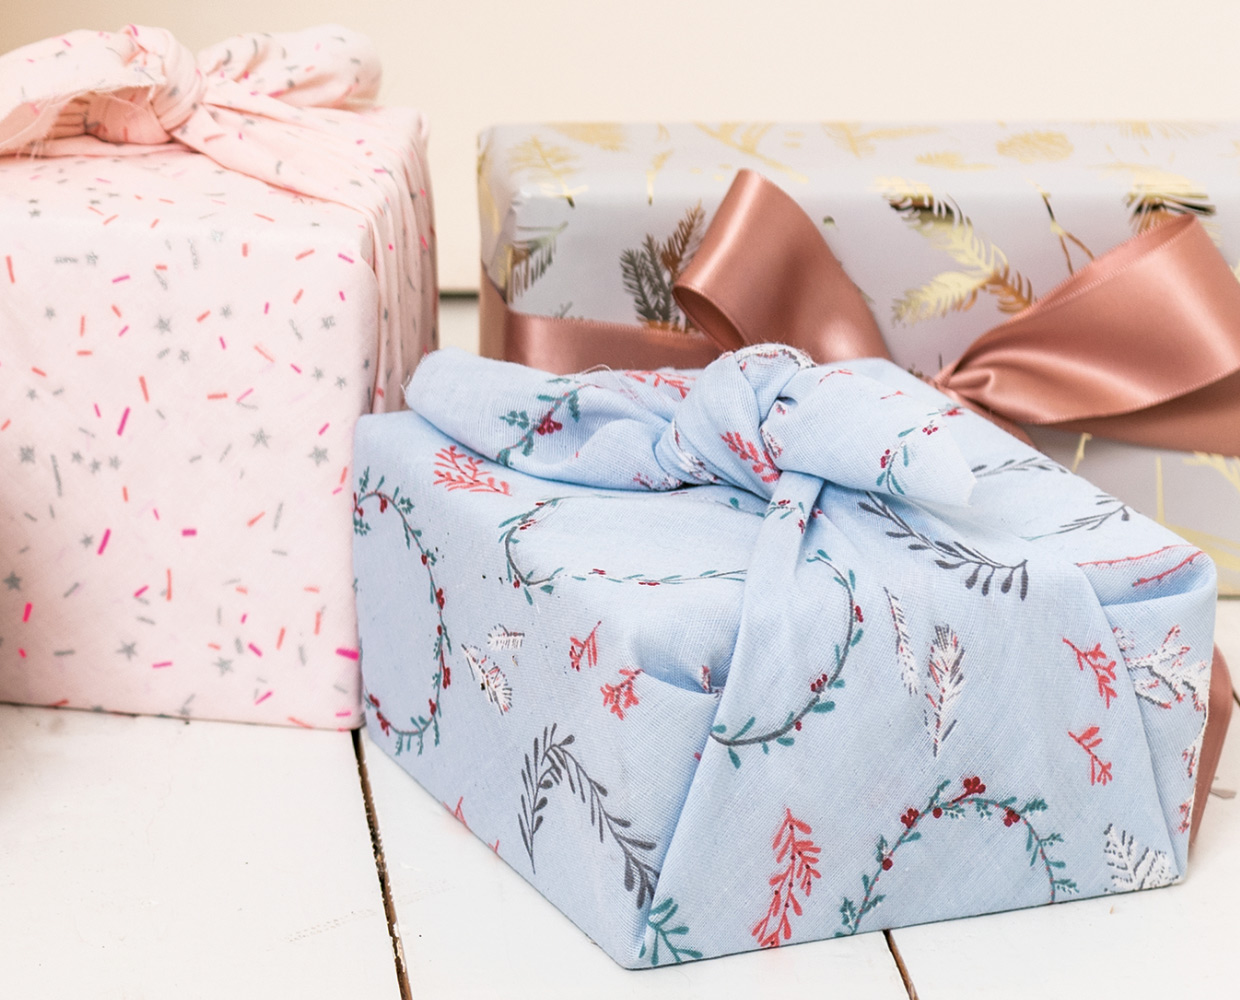 Geschenke nachhaltig verpacken - Furoshiki und Stoffbeutel